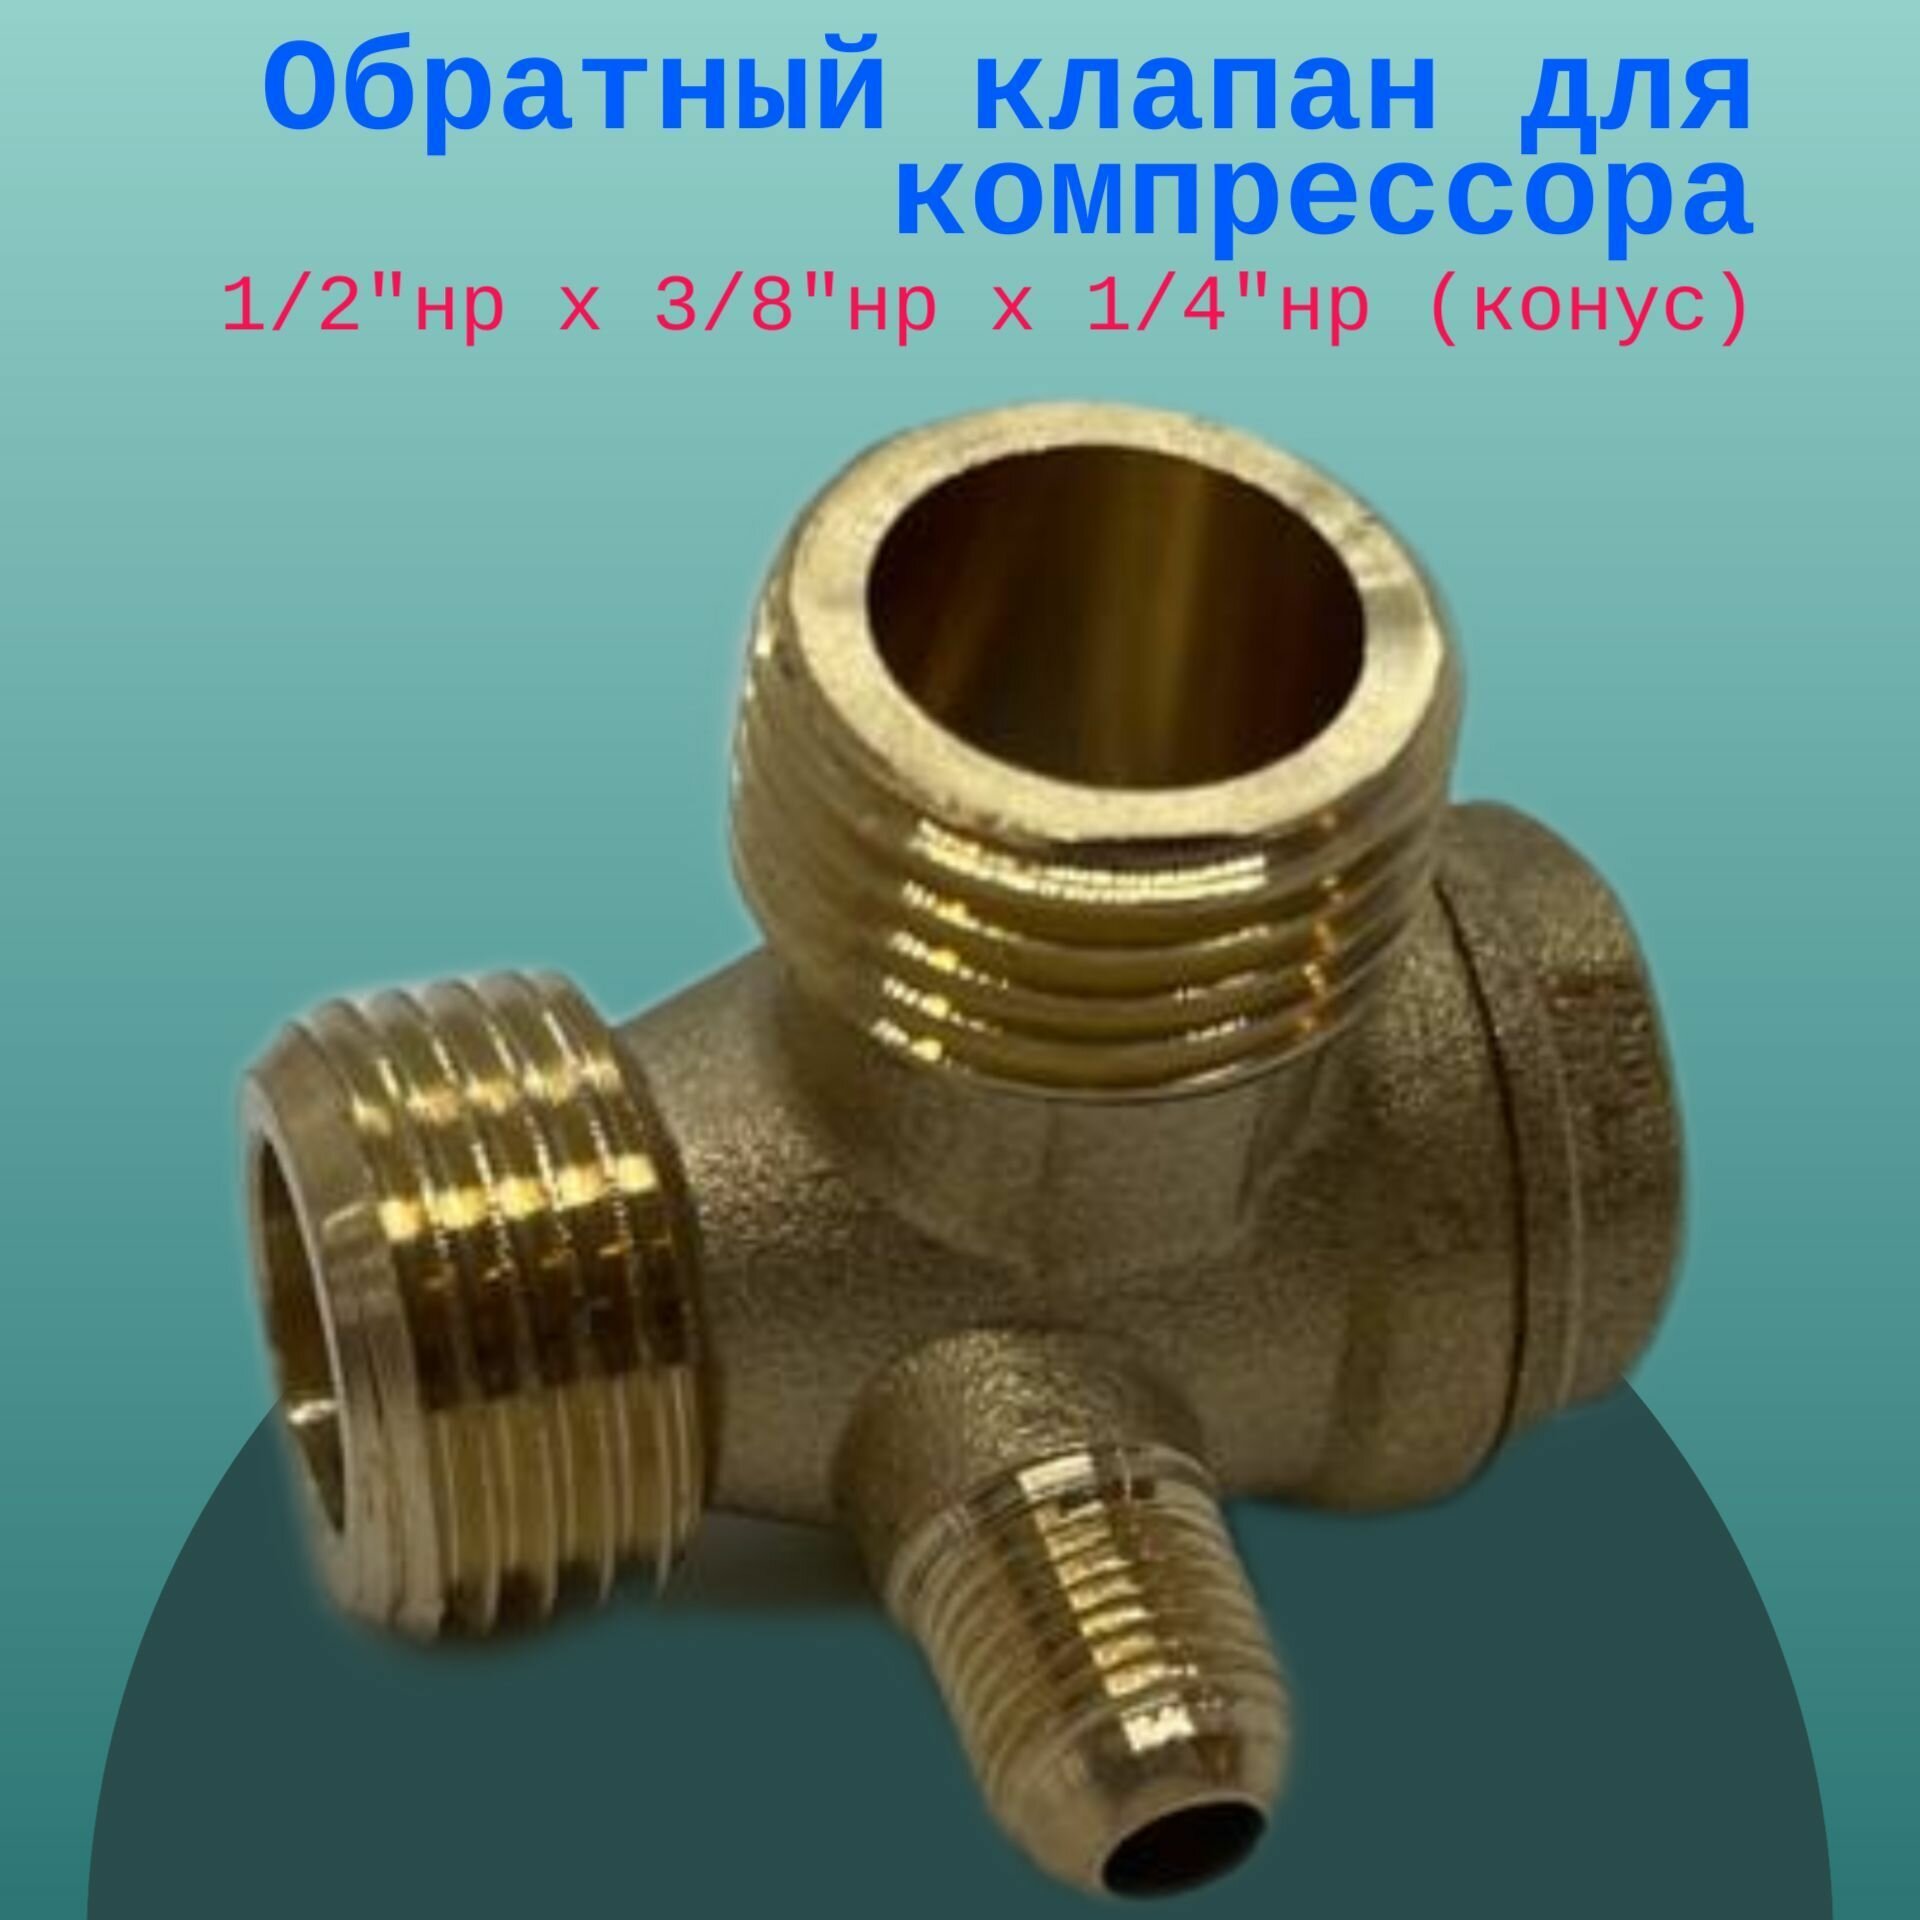 Обратный клапан для компрессора - 1/2"нр х 3/8"нр х 1/4"нр (конус)